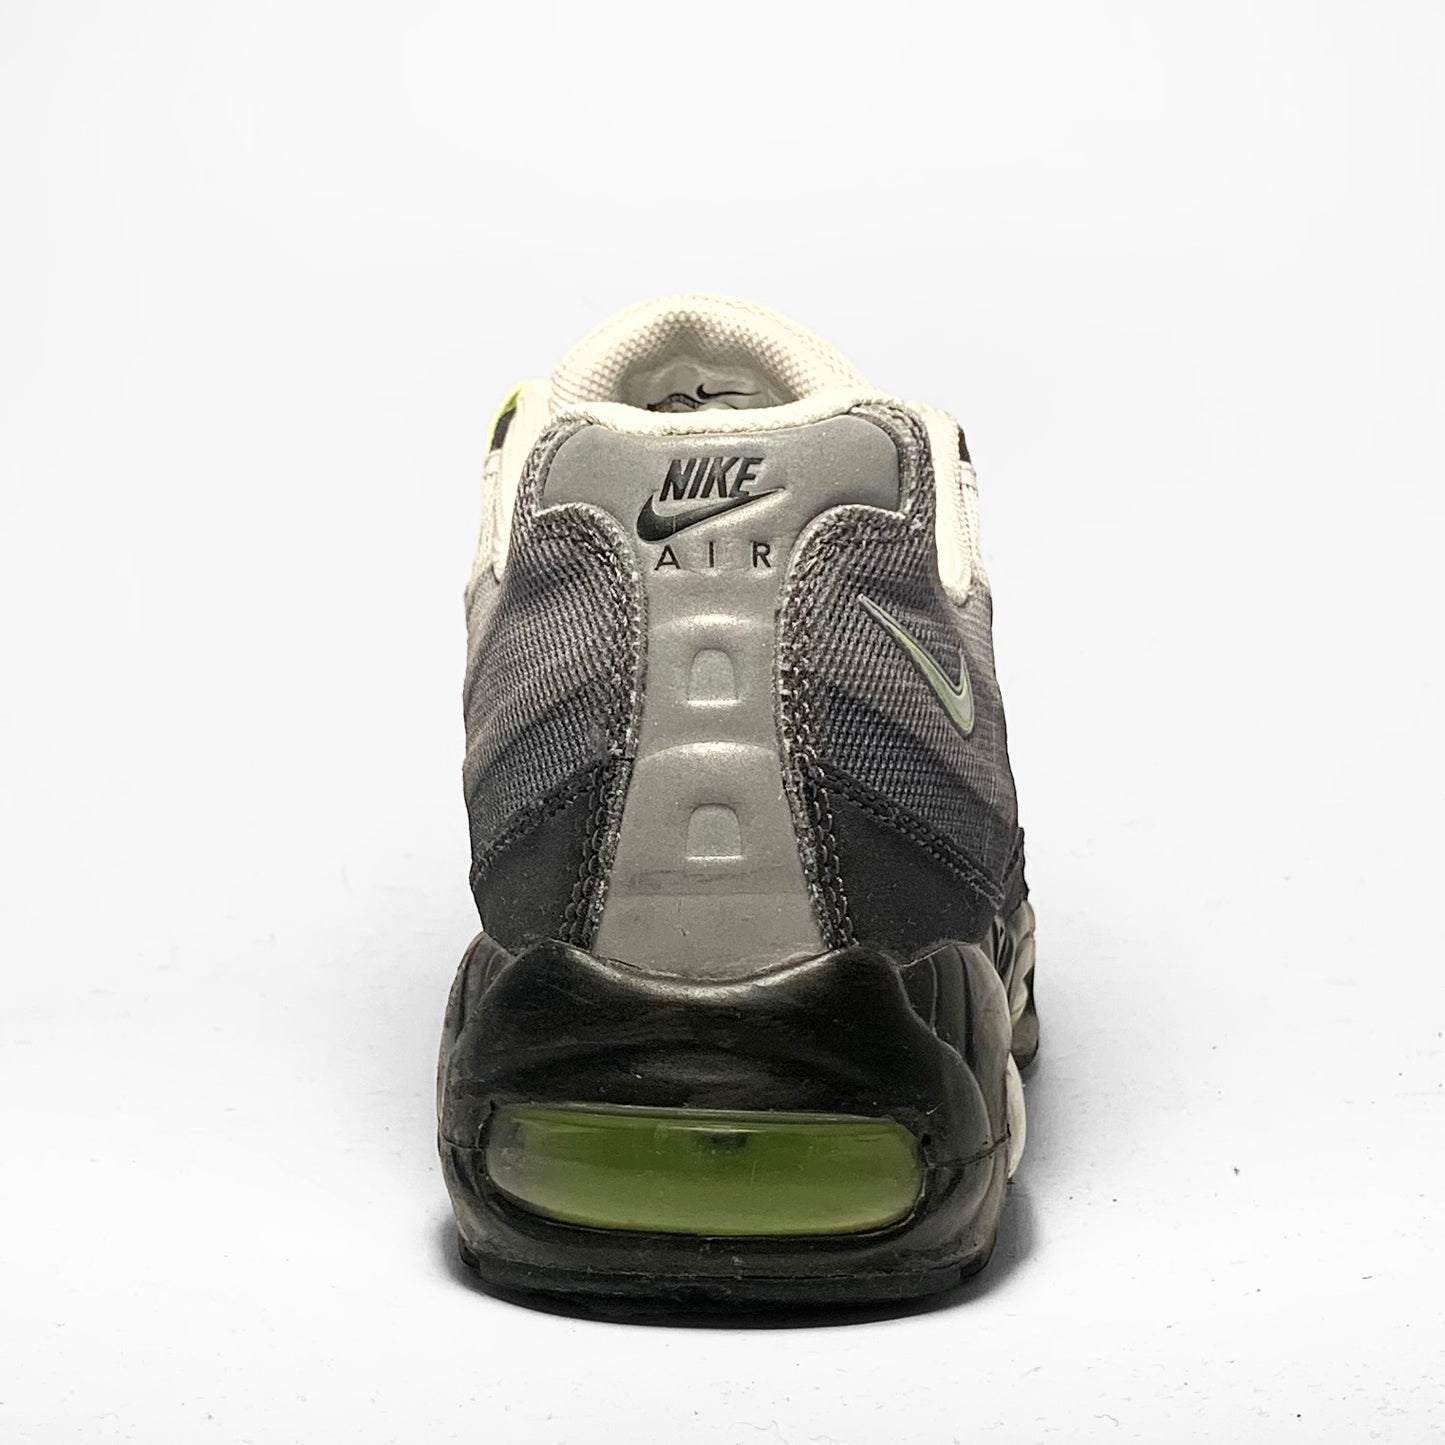 Nike Air Max 95 ‘Premium Tape - Neon’ (2013)